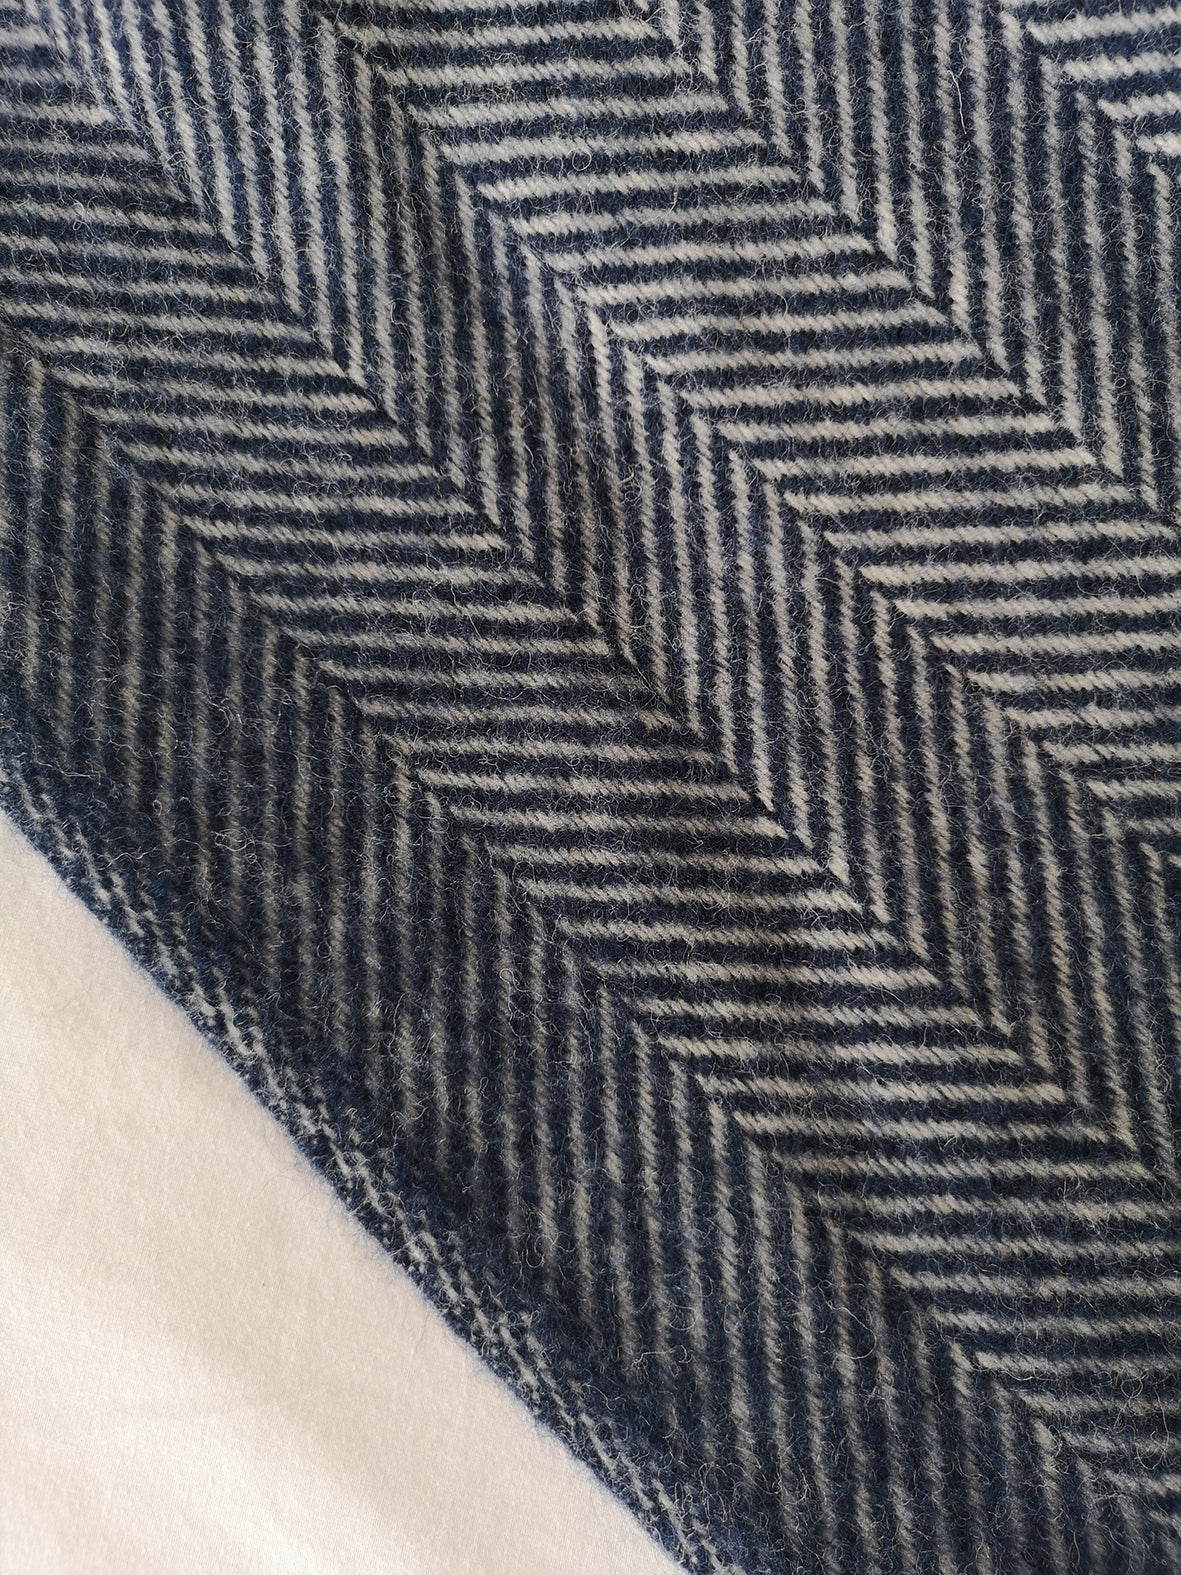 Navy Blue Herringbone Wool Throw by Rebecca Pitcher